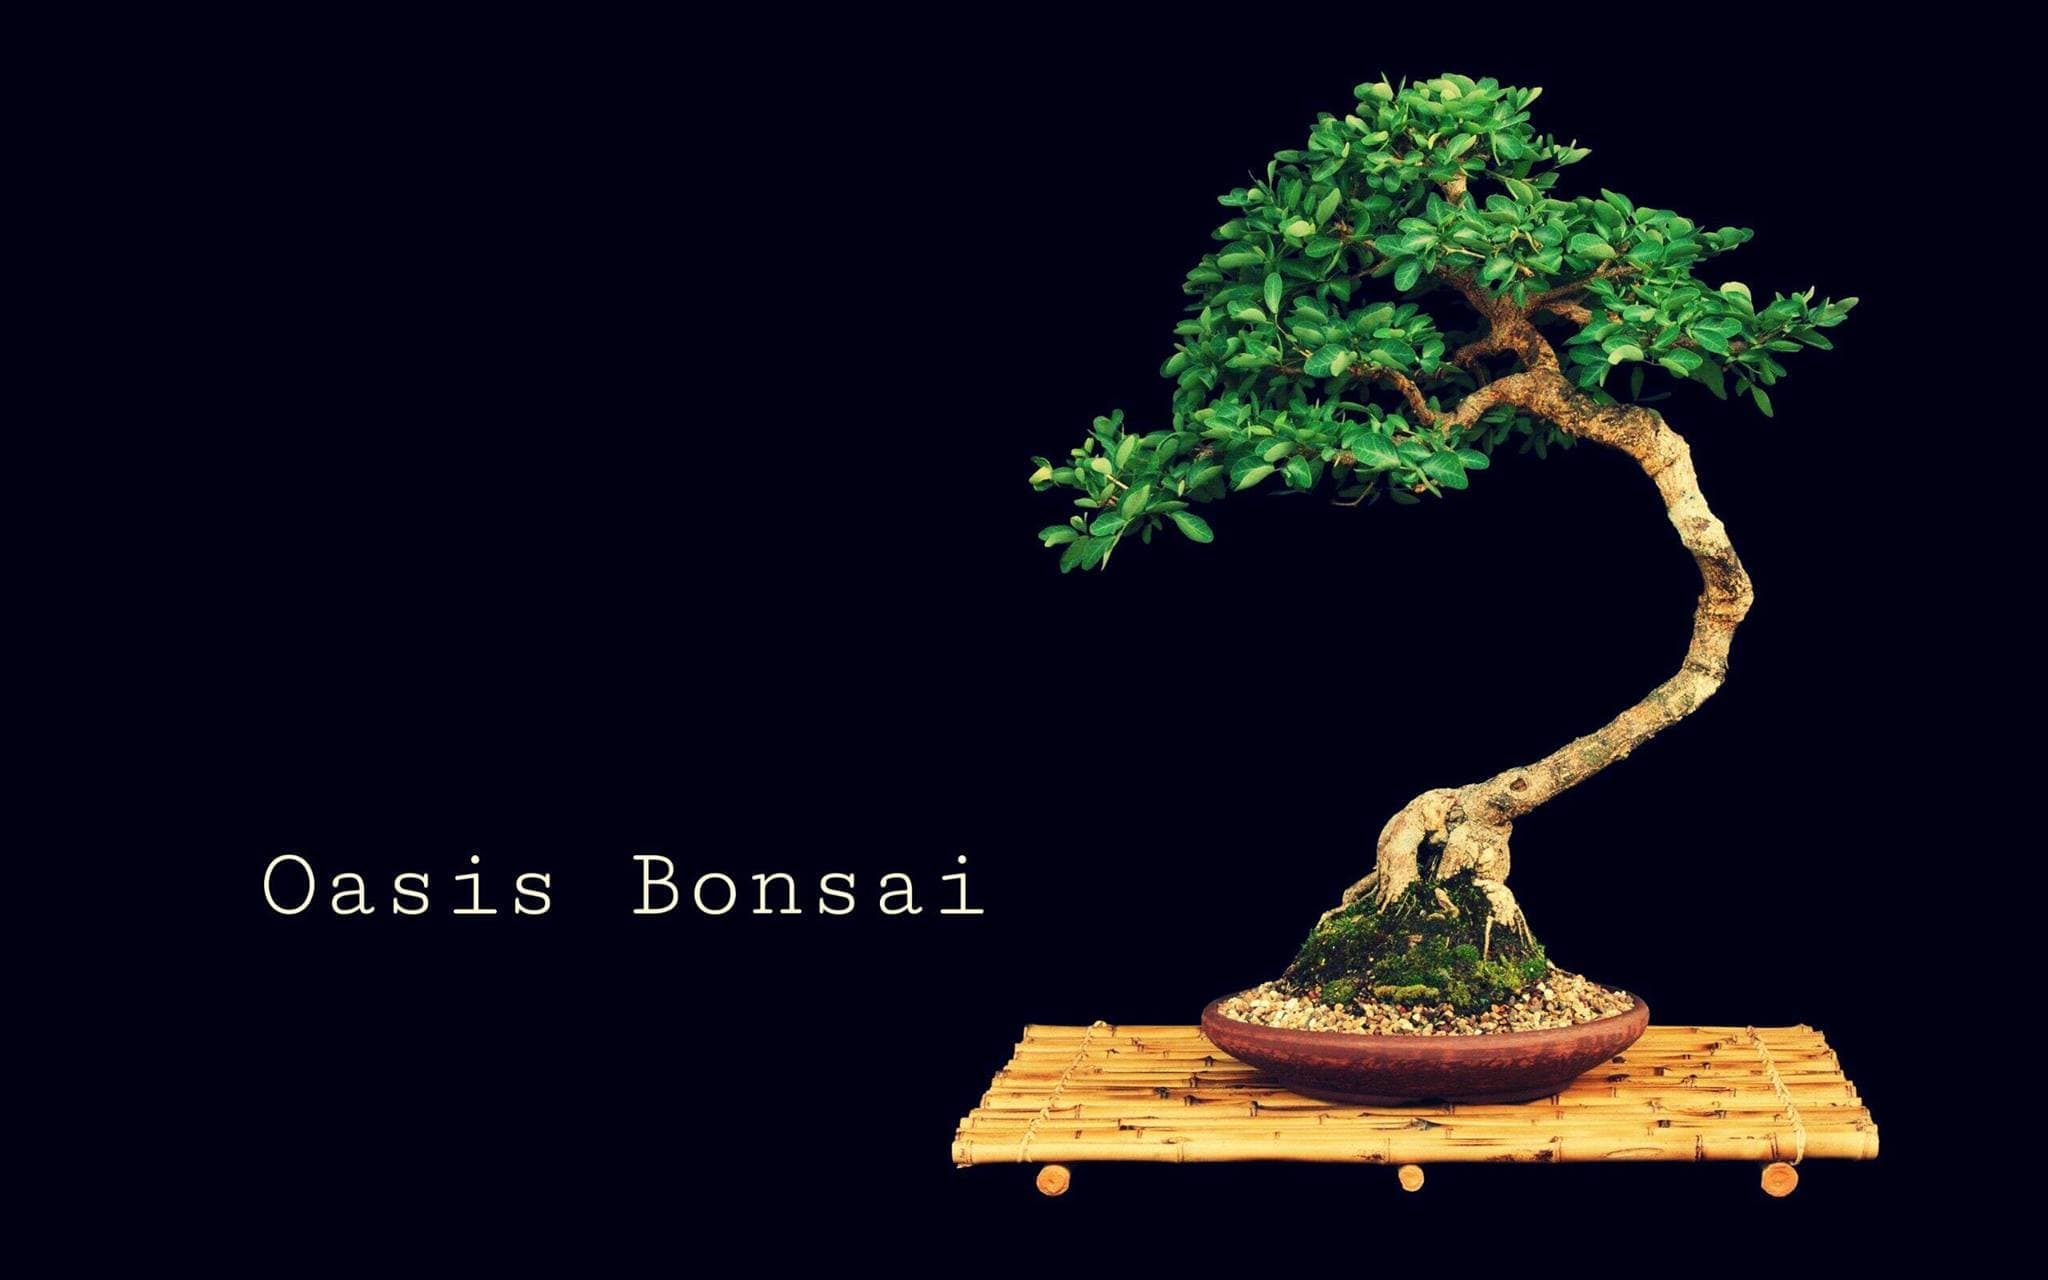 Oasis Bonsai